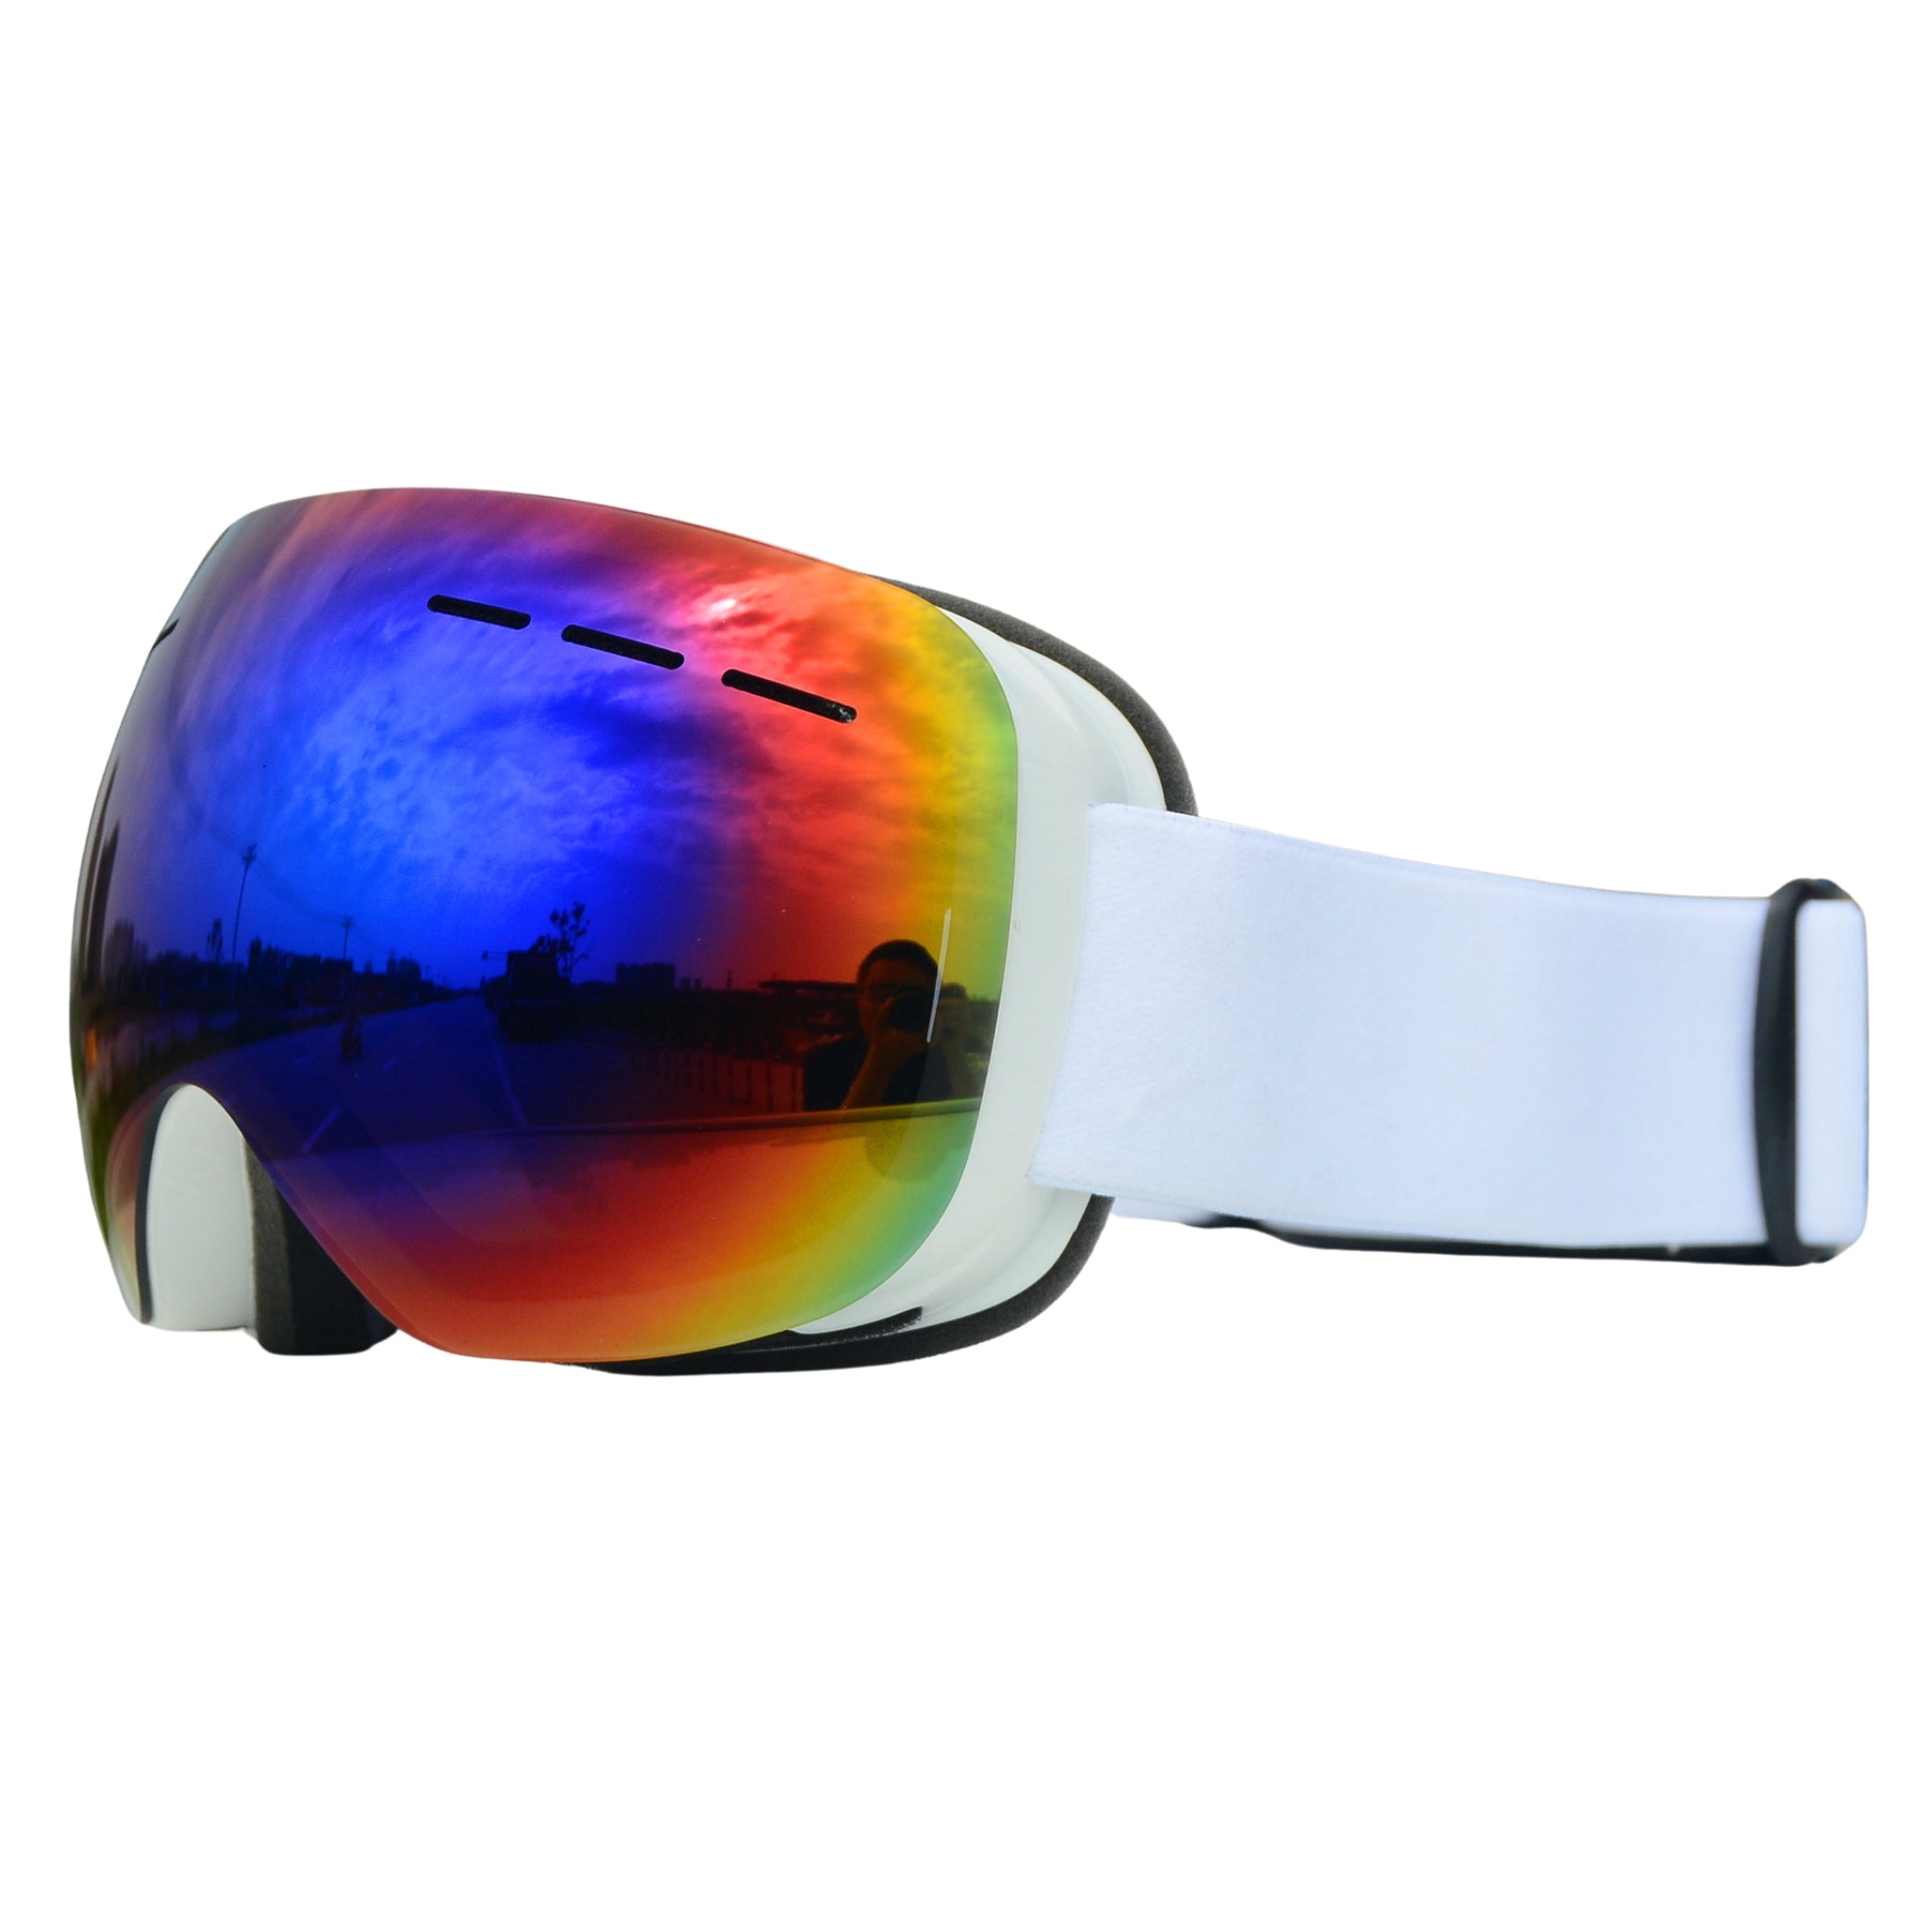 Skijaške SKI naočale brile HX-06 BIJELE